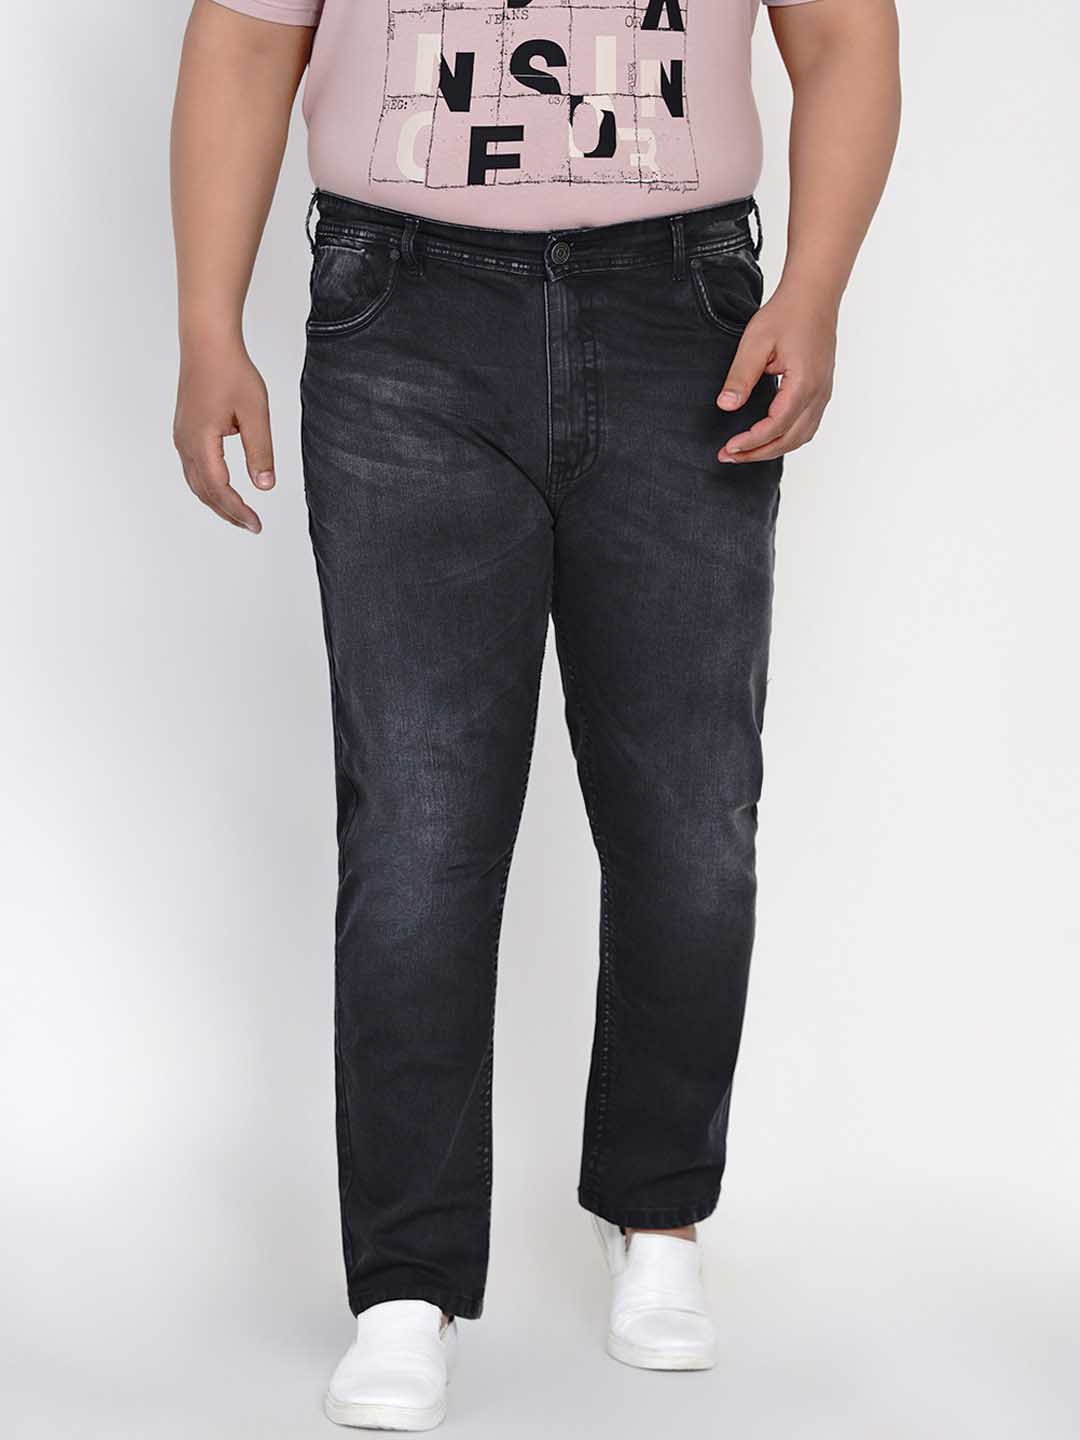 bottomwear/jeans/JPJ12119/jpj12119-1.jpg